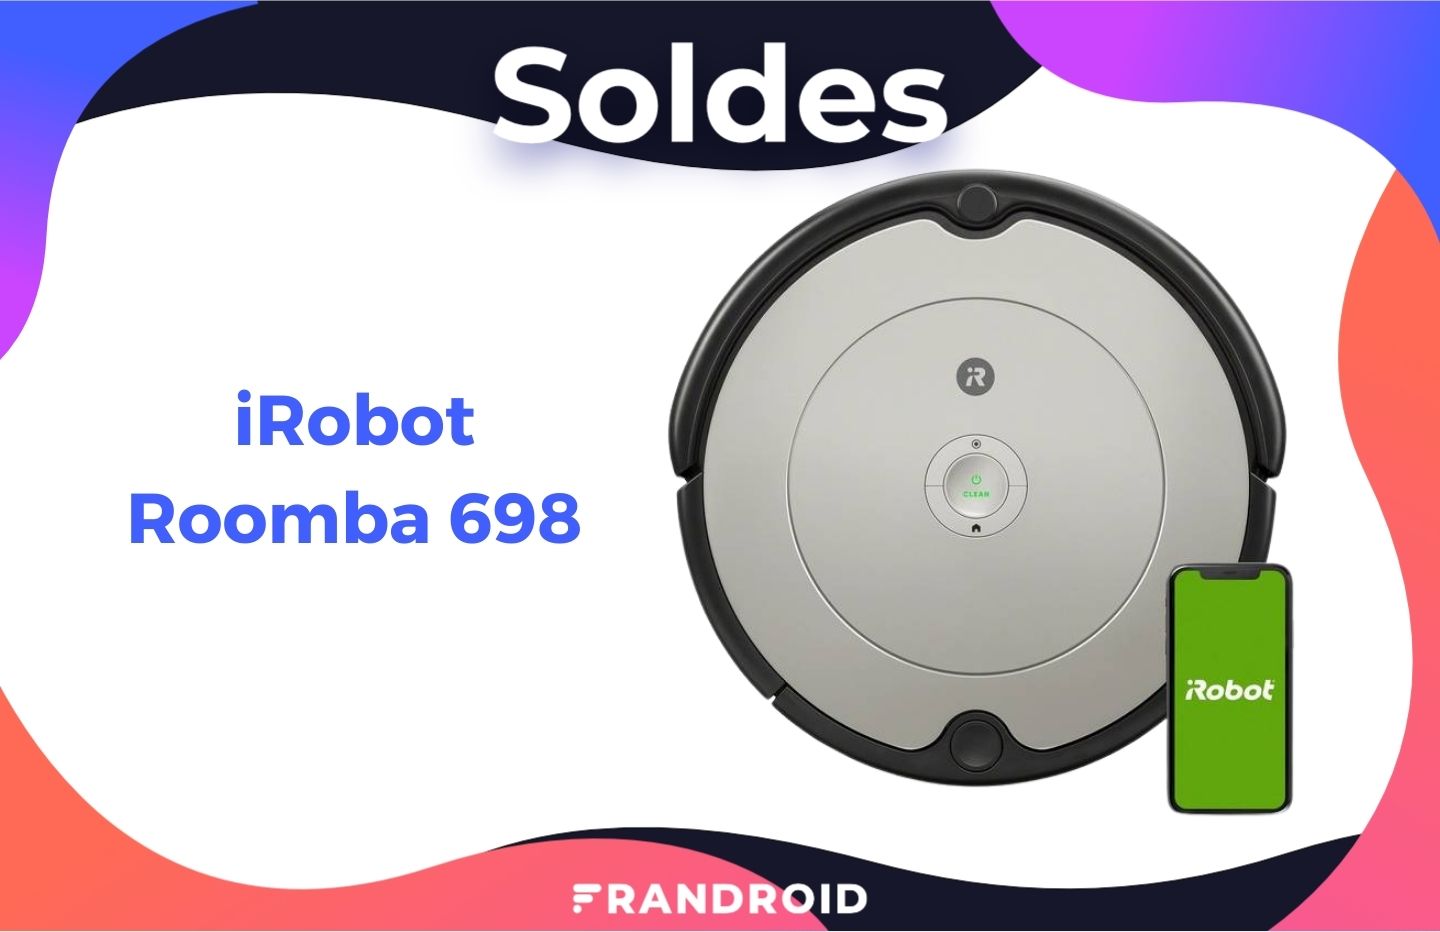 Frandroid on X: Grâce à cette grosse promo de 500 euros pendant les soldes,  le prix du robot aspirateur iRobot Roomba j7+ est en chute libre 🔥 #Soldes  #BonPlan 👉   /